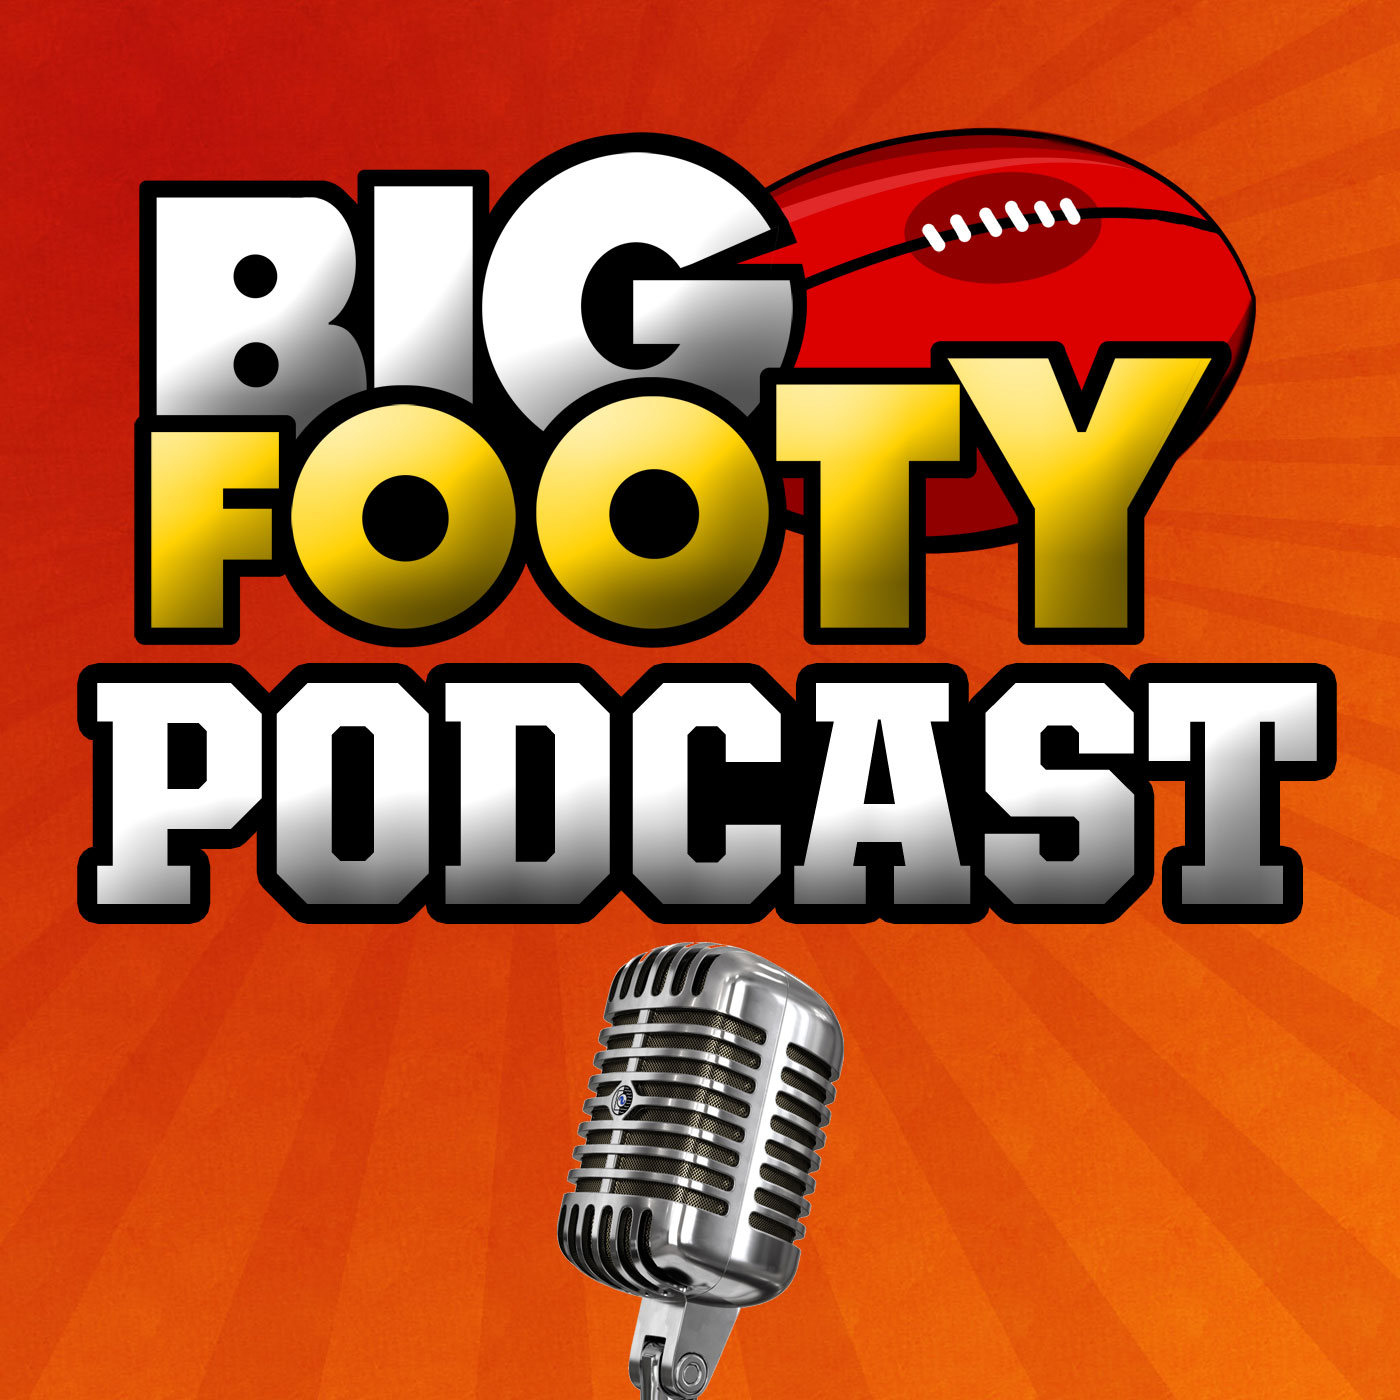 BigFooty.com Women's Footy Podcast